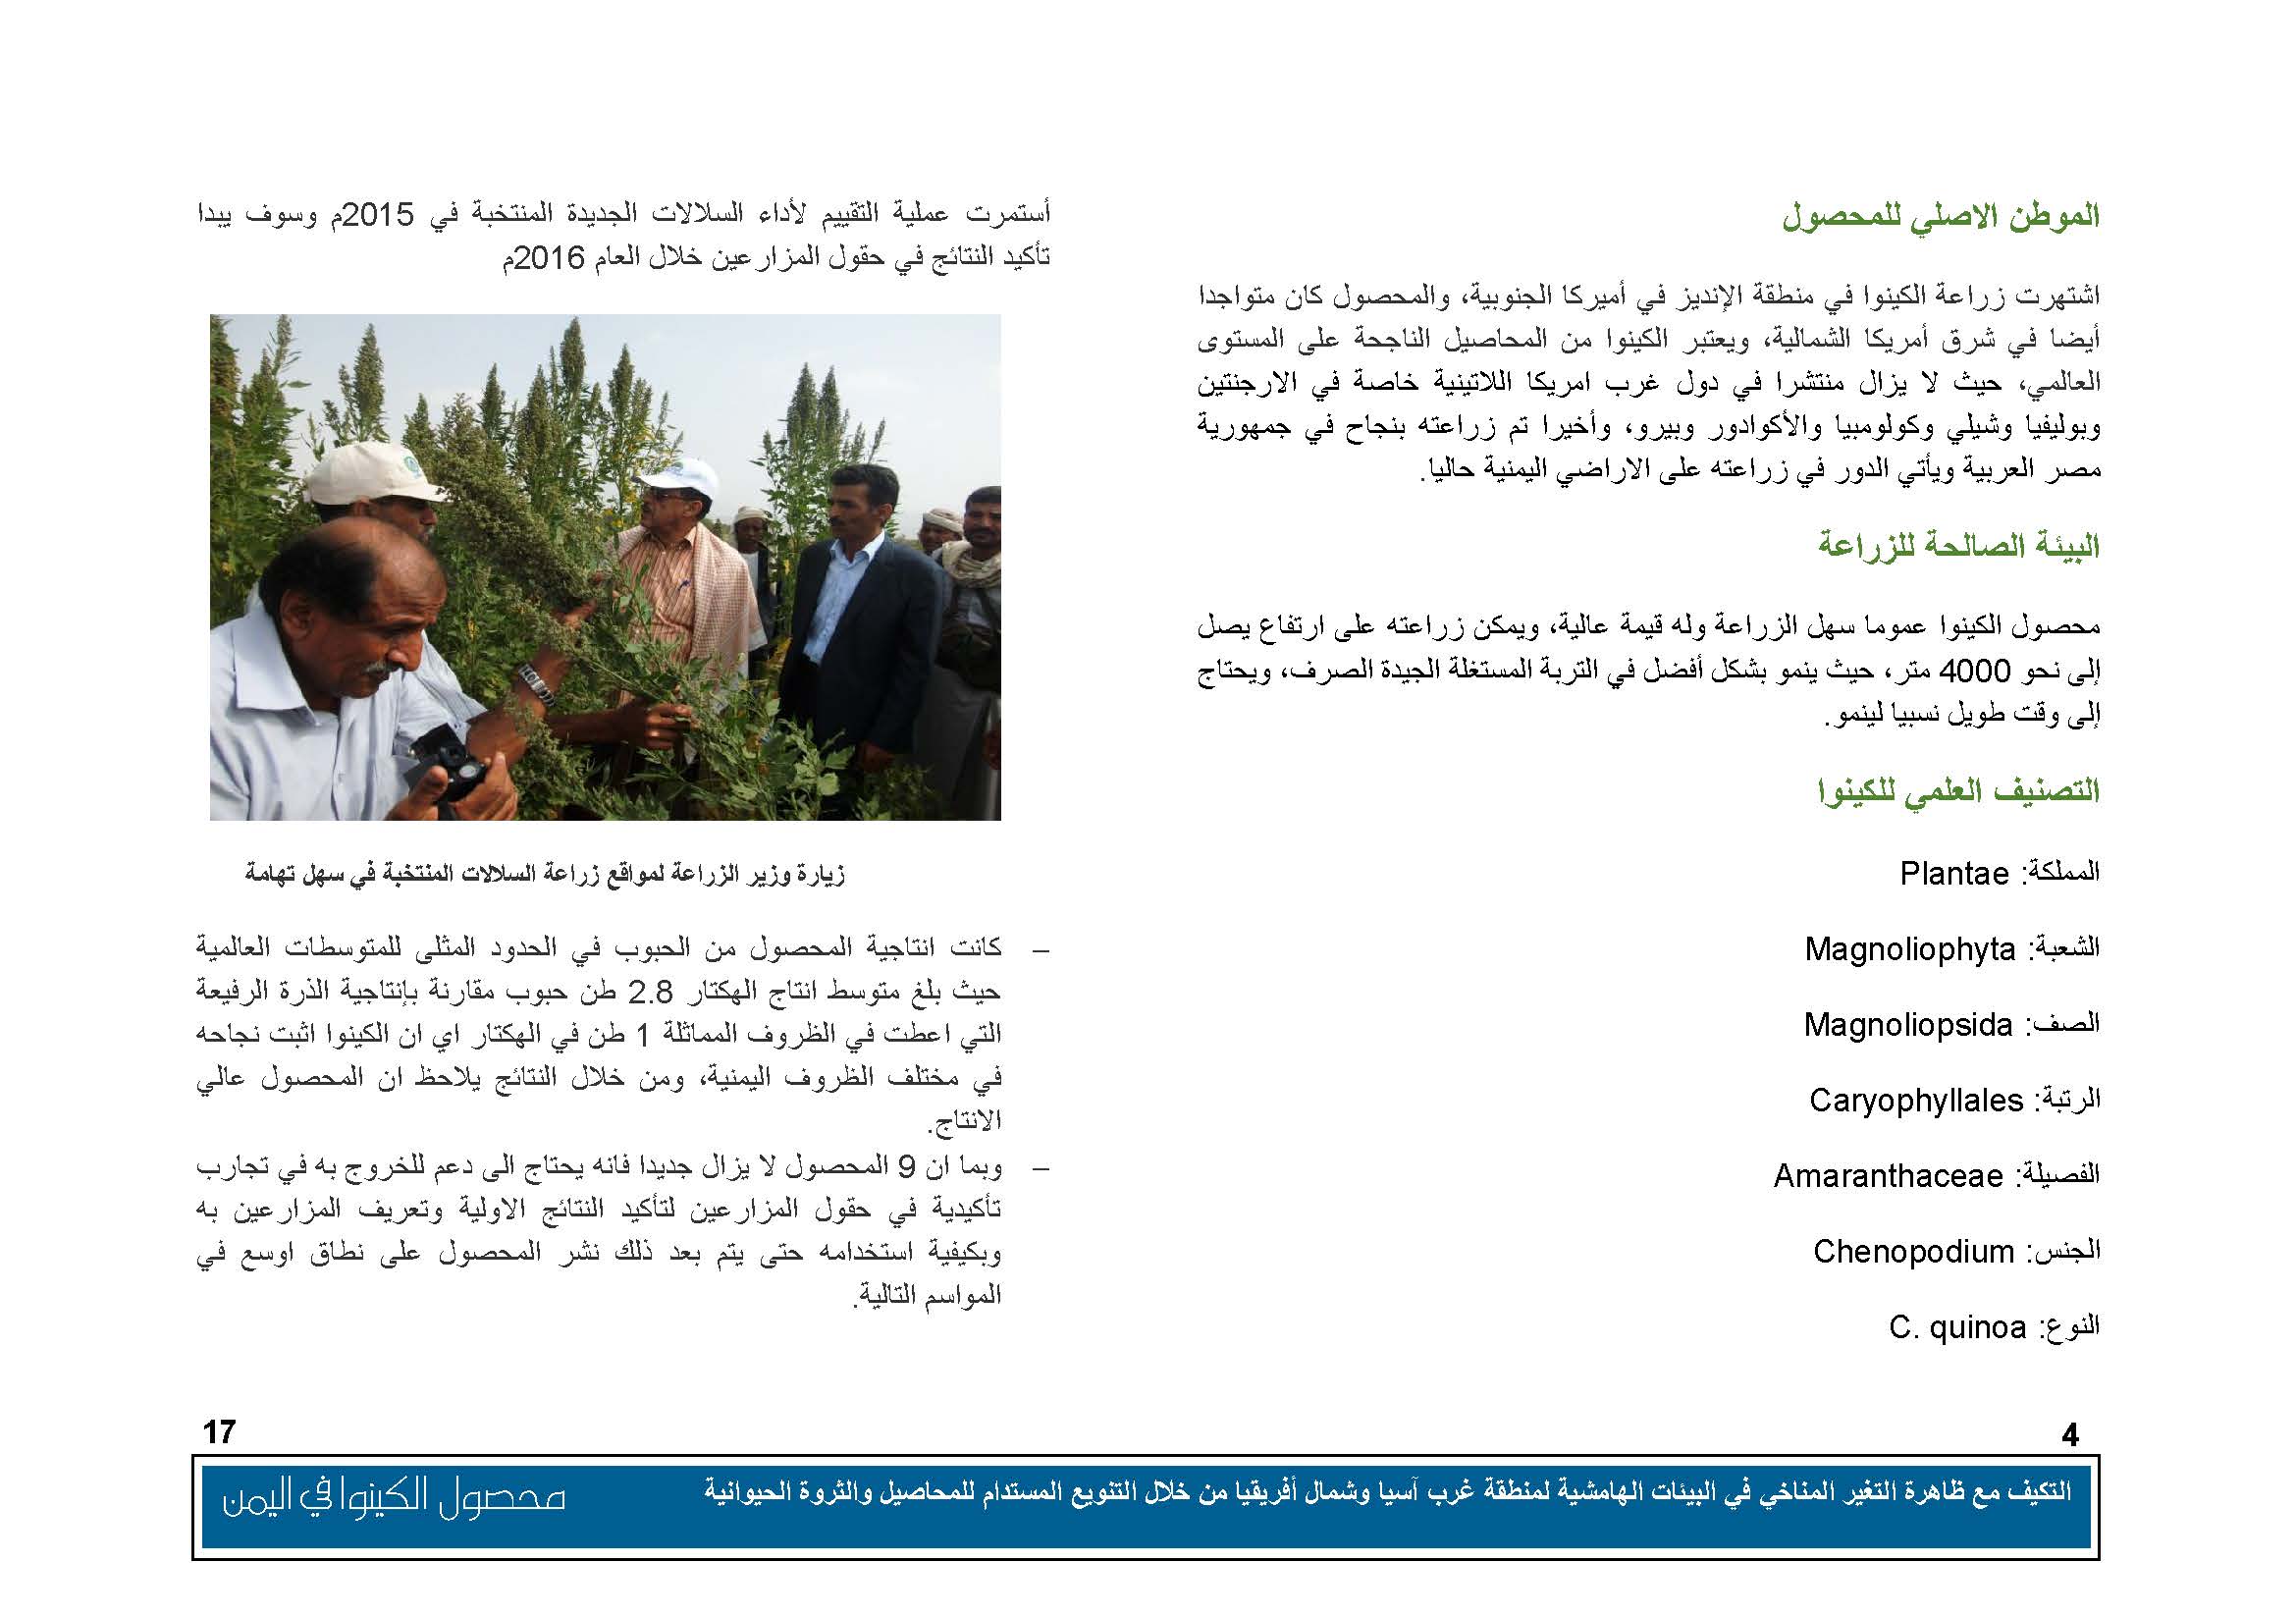 محصول الكينوا في اليمن (1)_Page_05